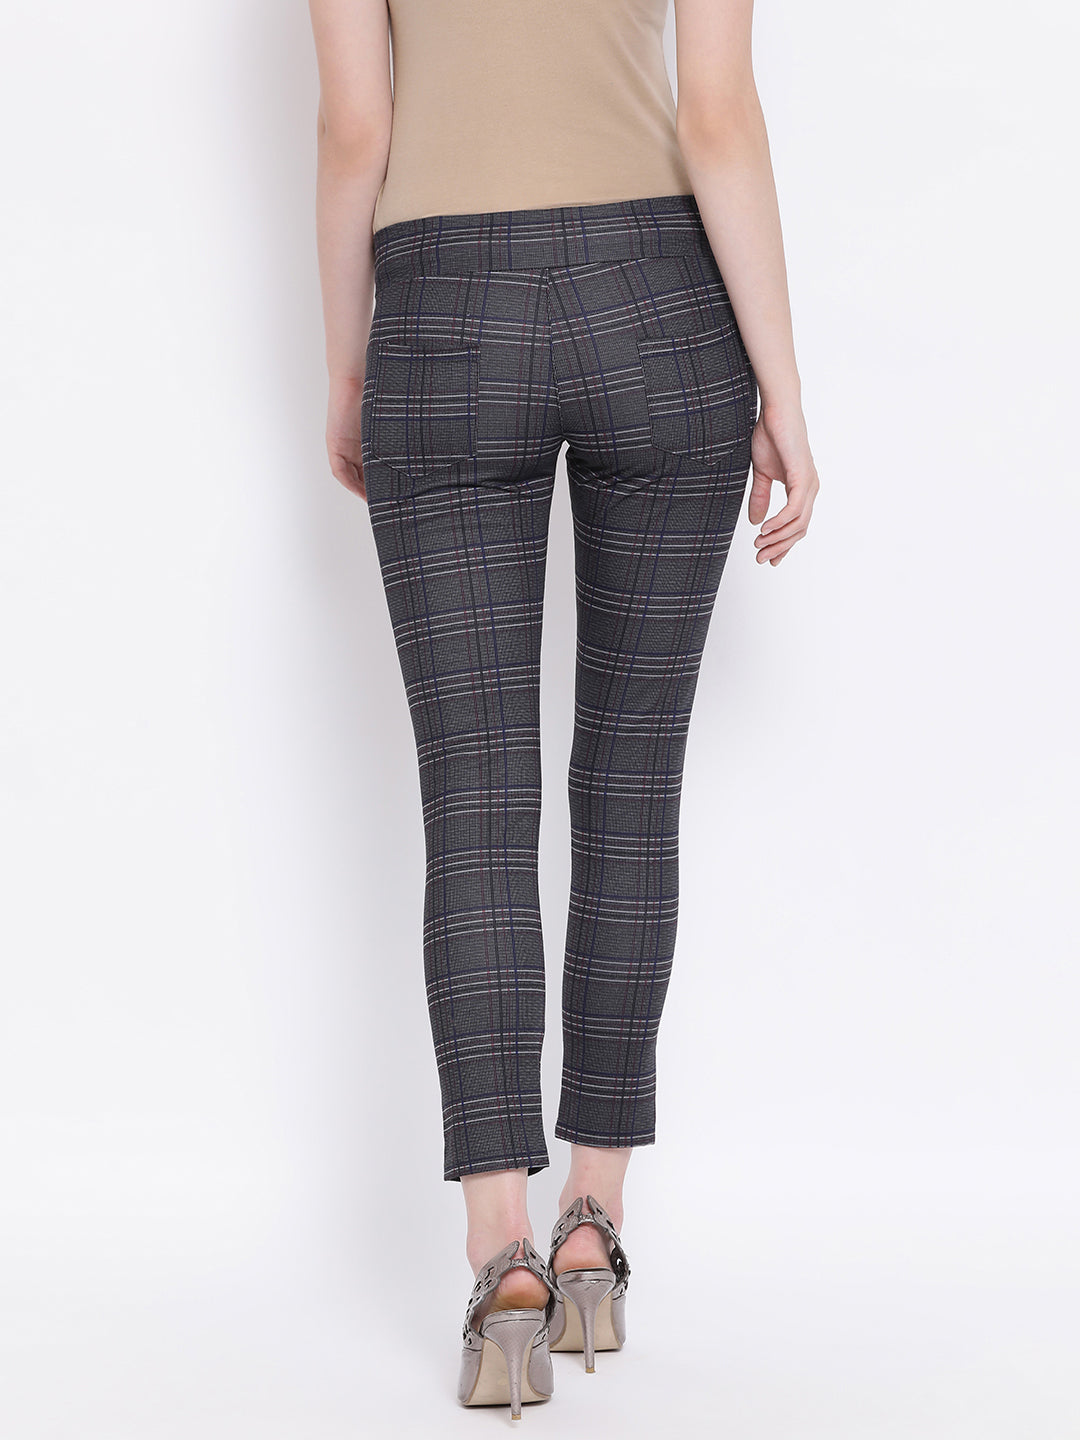 Grey Smart Fit Trousers - Women Trousers